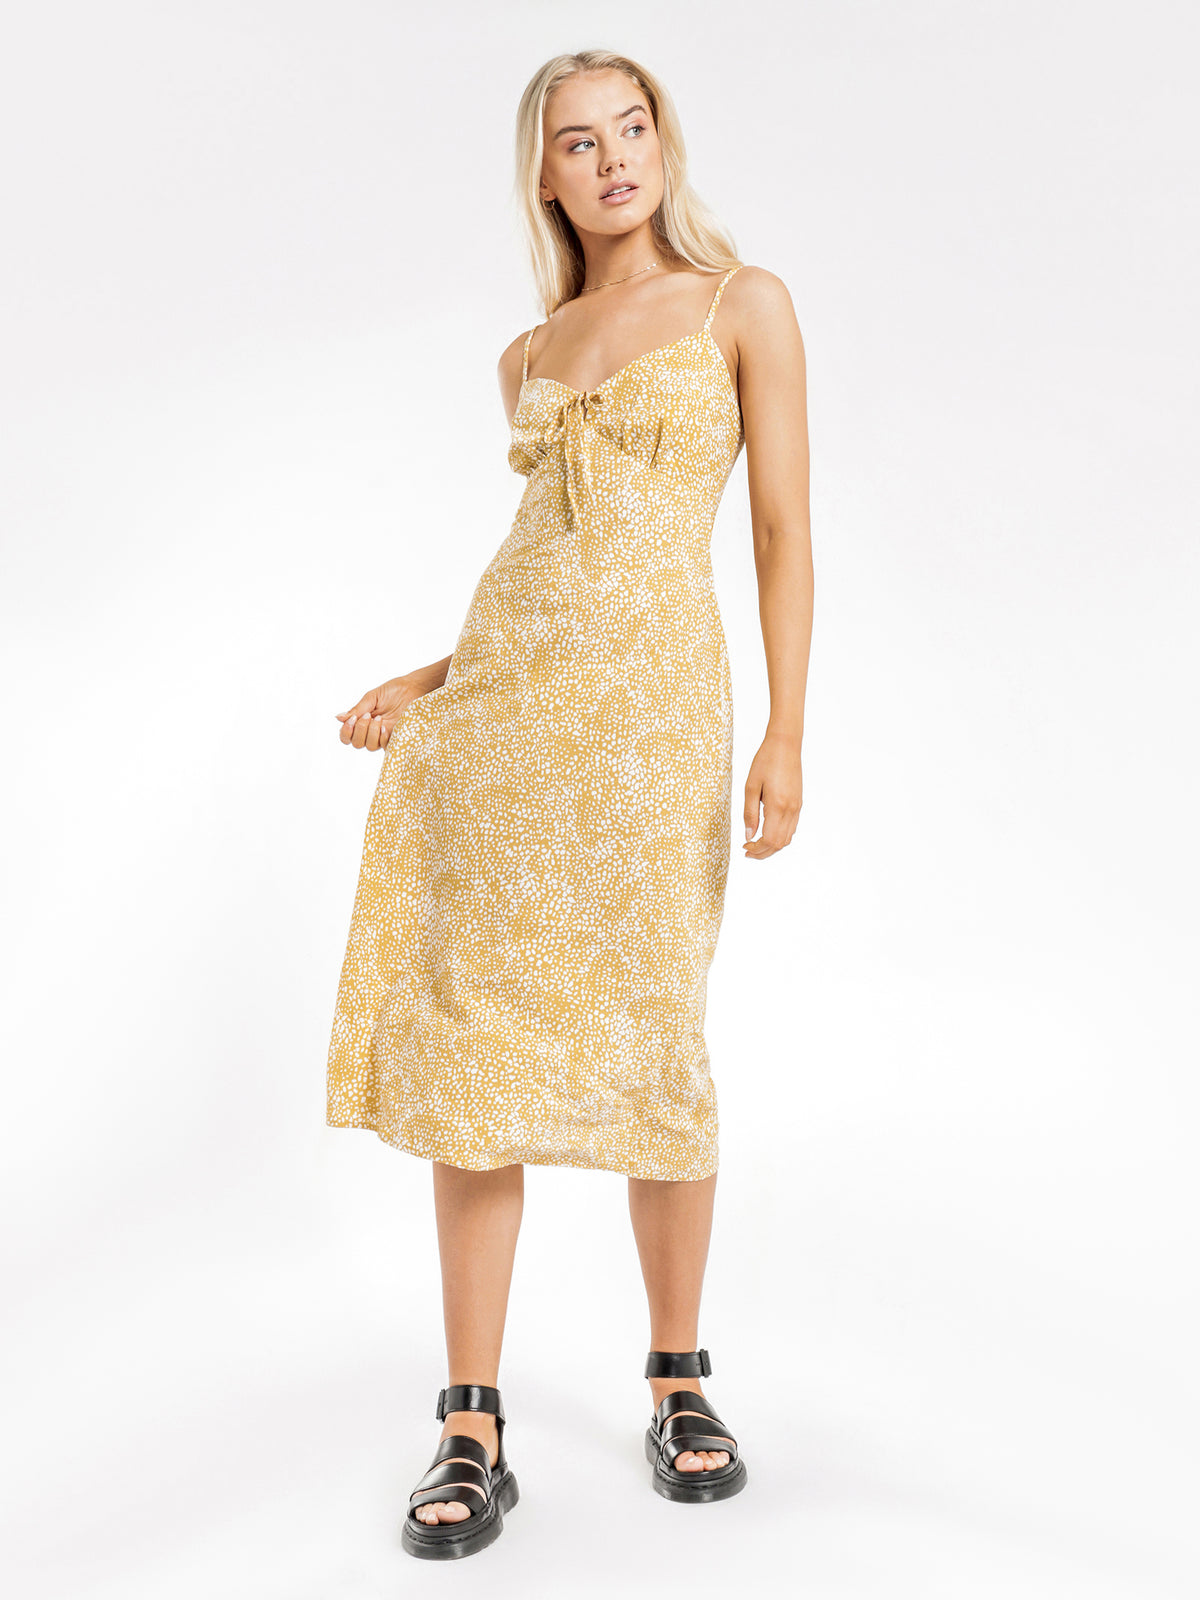 Cosette Midi Slip Dress in Yellow Spot